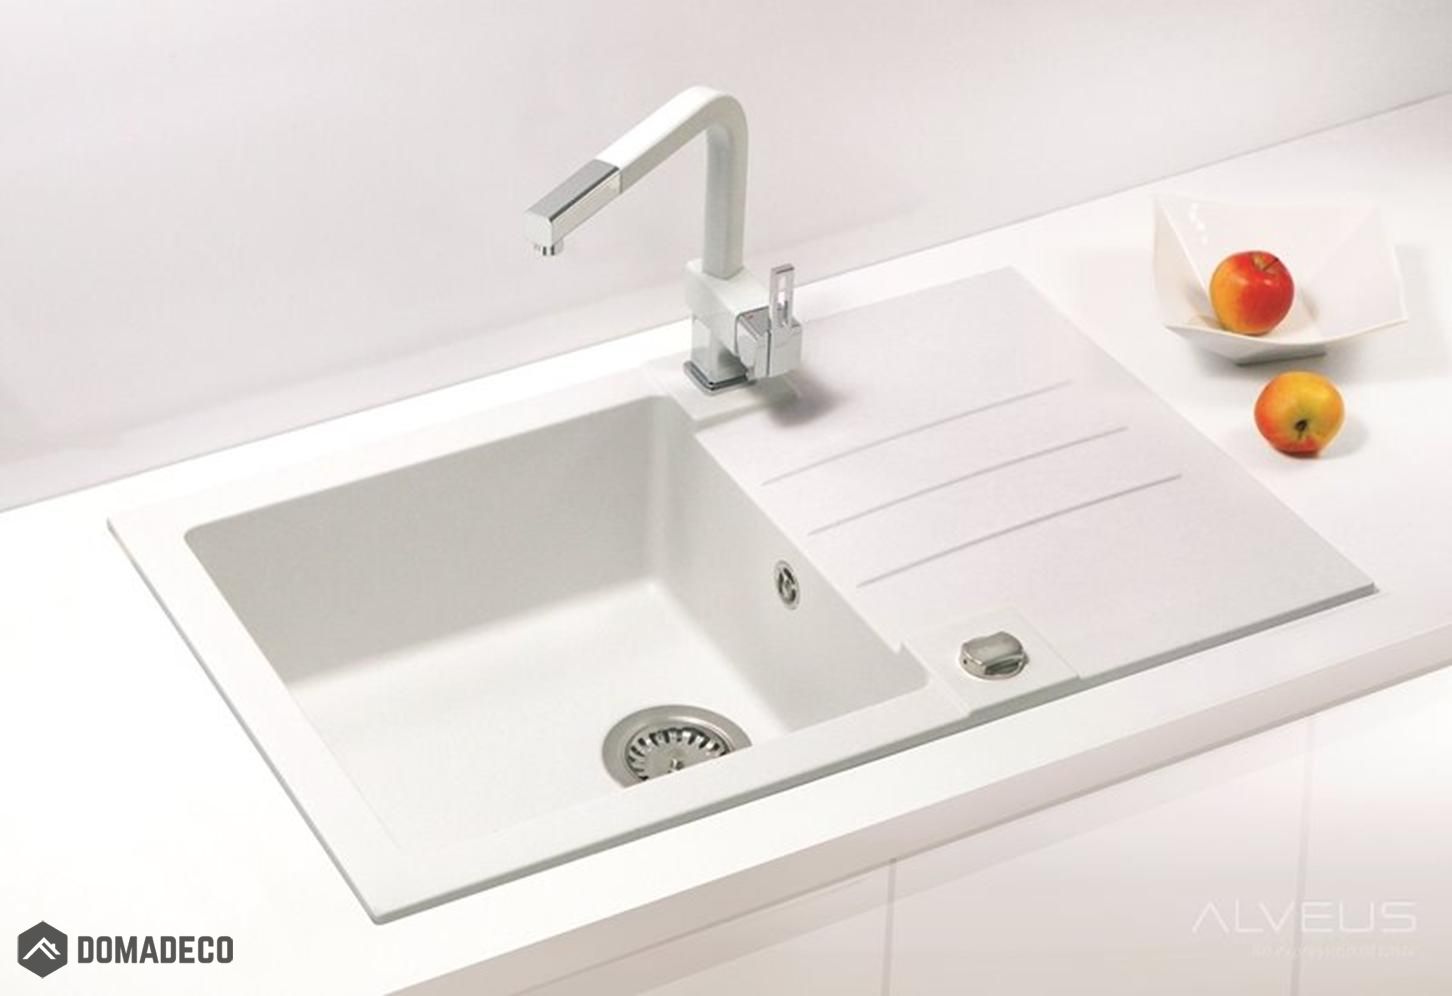 Elegant granite sinks to any kitchens